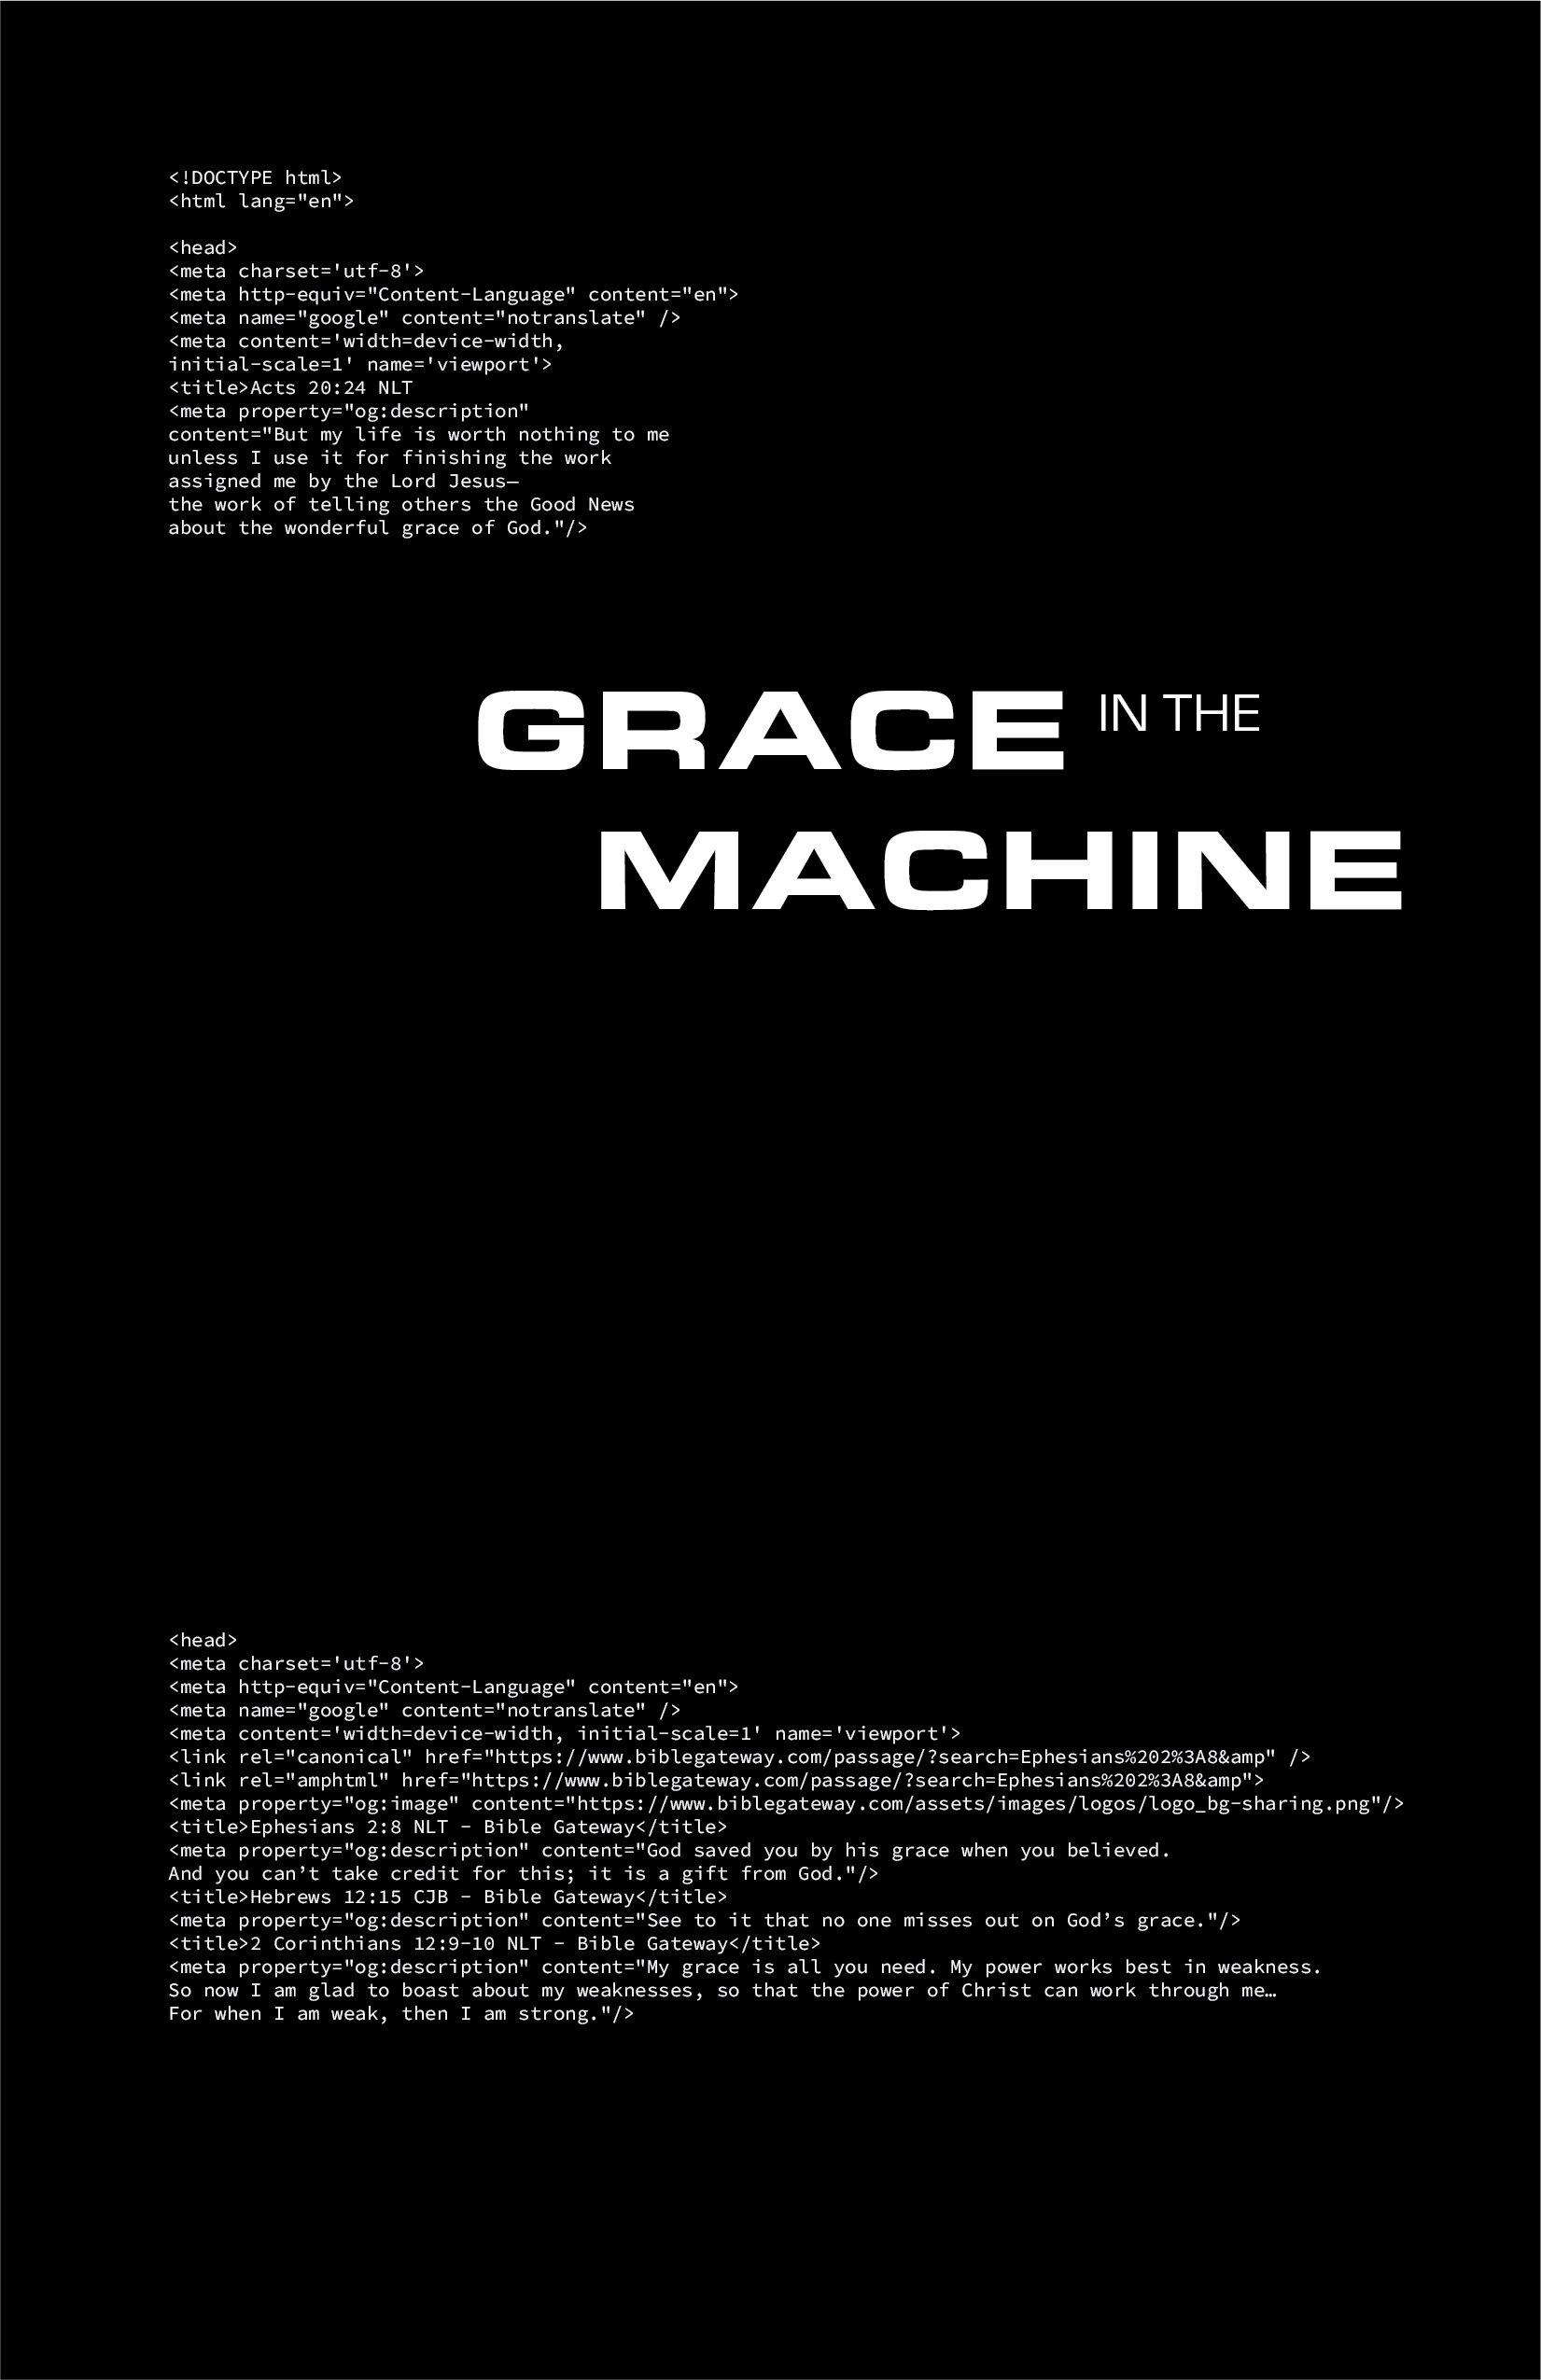 2022_0207 DbyG Grace in the Machine Journal Printful 5.25x8.25 black 0.25 bleed.jpg